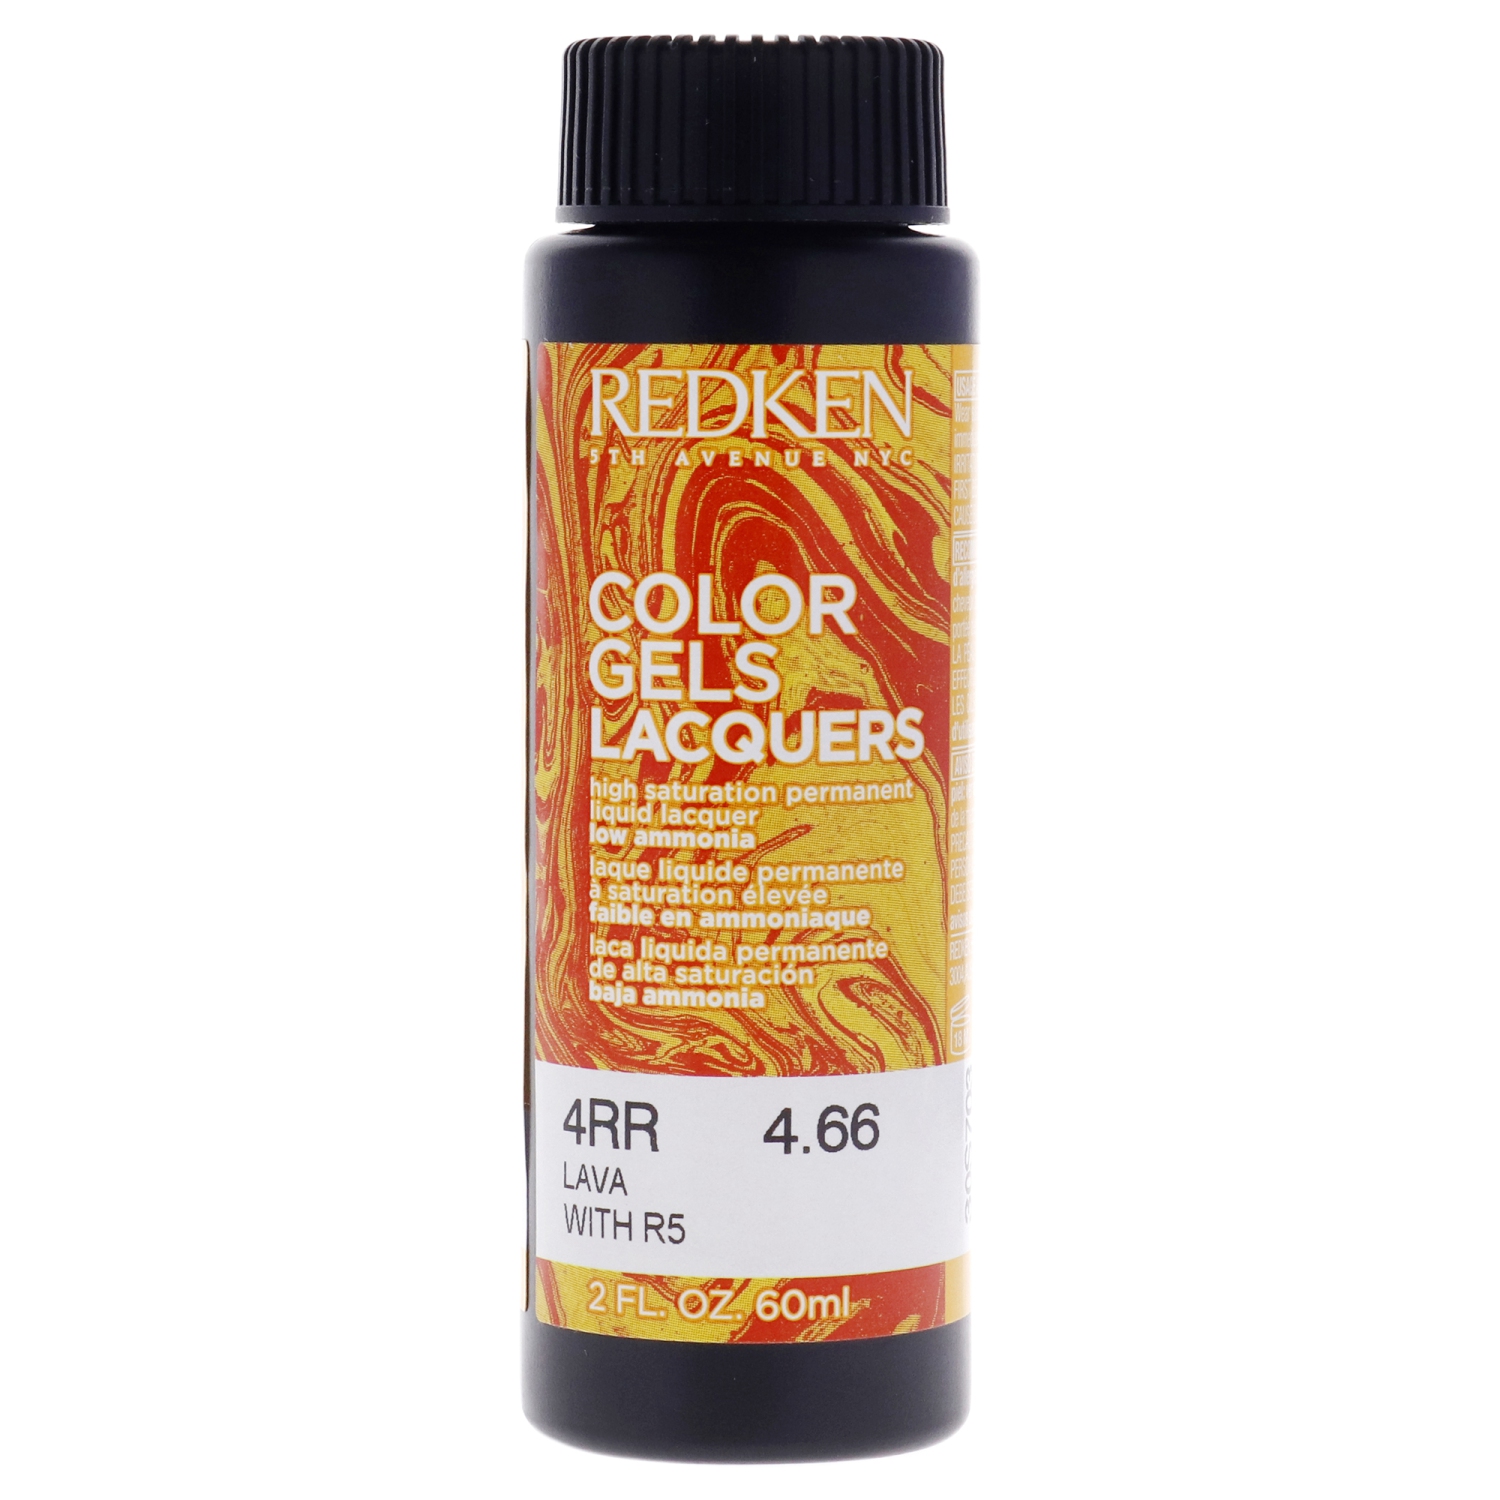 Color Gels Lacquers Haircolor - 4RR Lava by Redken for Unisex - 2 oz Hair Color